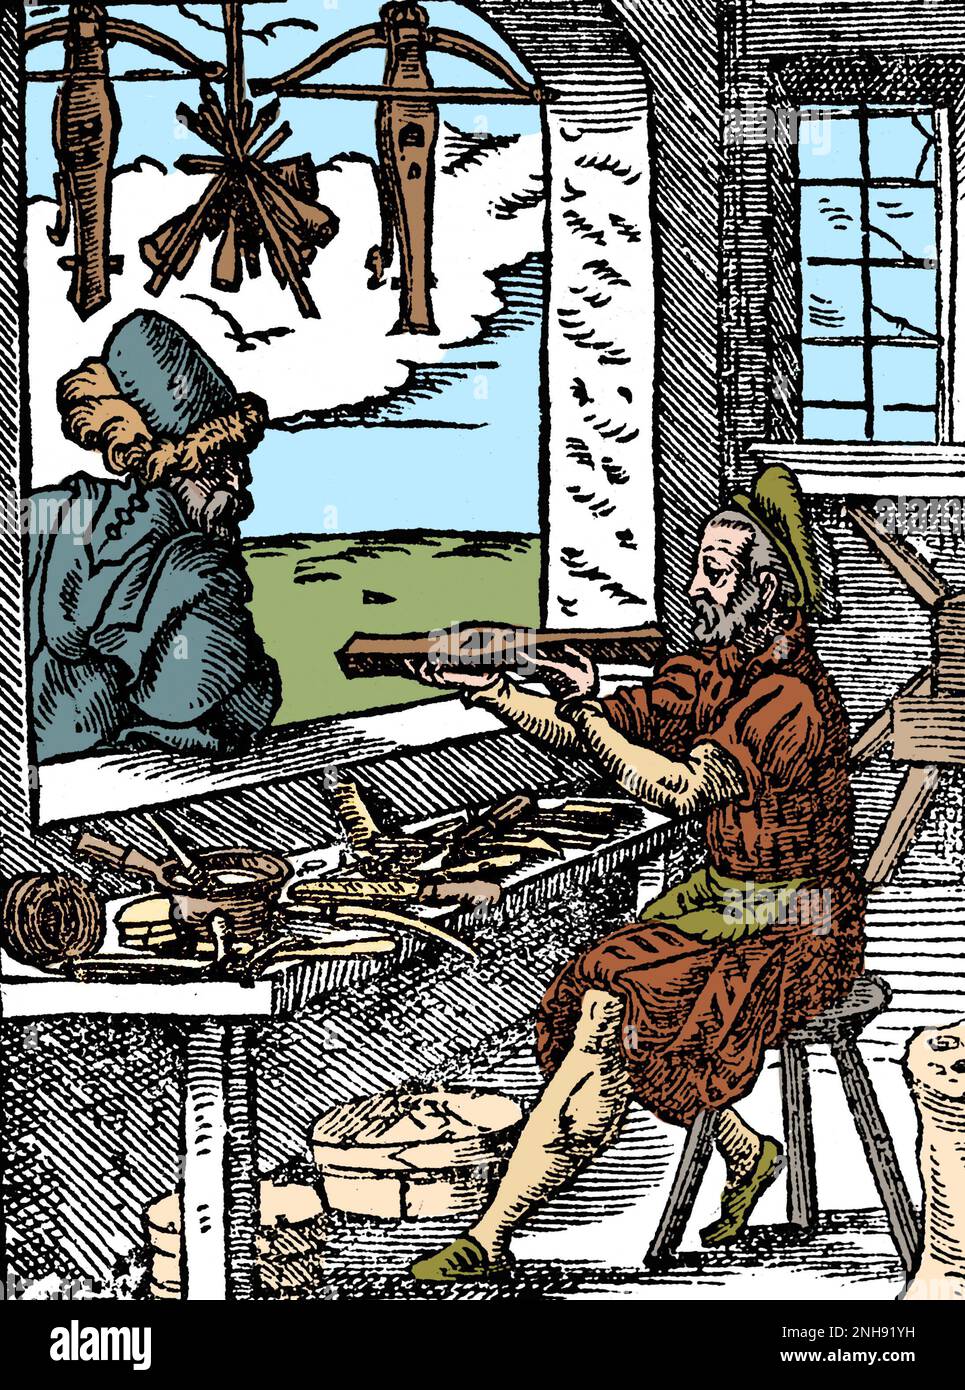 Ein Armbrust-Hersteller (Bowyer) arbeitet an seiner Werkbank, mit zwei fertigen Armbrust und einigen Bolzen, die im Fenster hängen. Woodcut aus Jost Ammans Handelsbuch, 1568. Gefärbt. Stockfoto